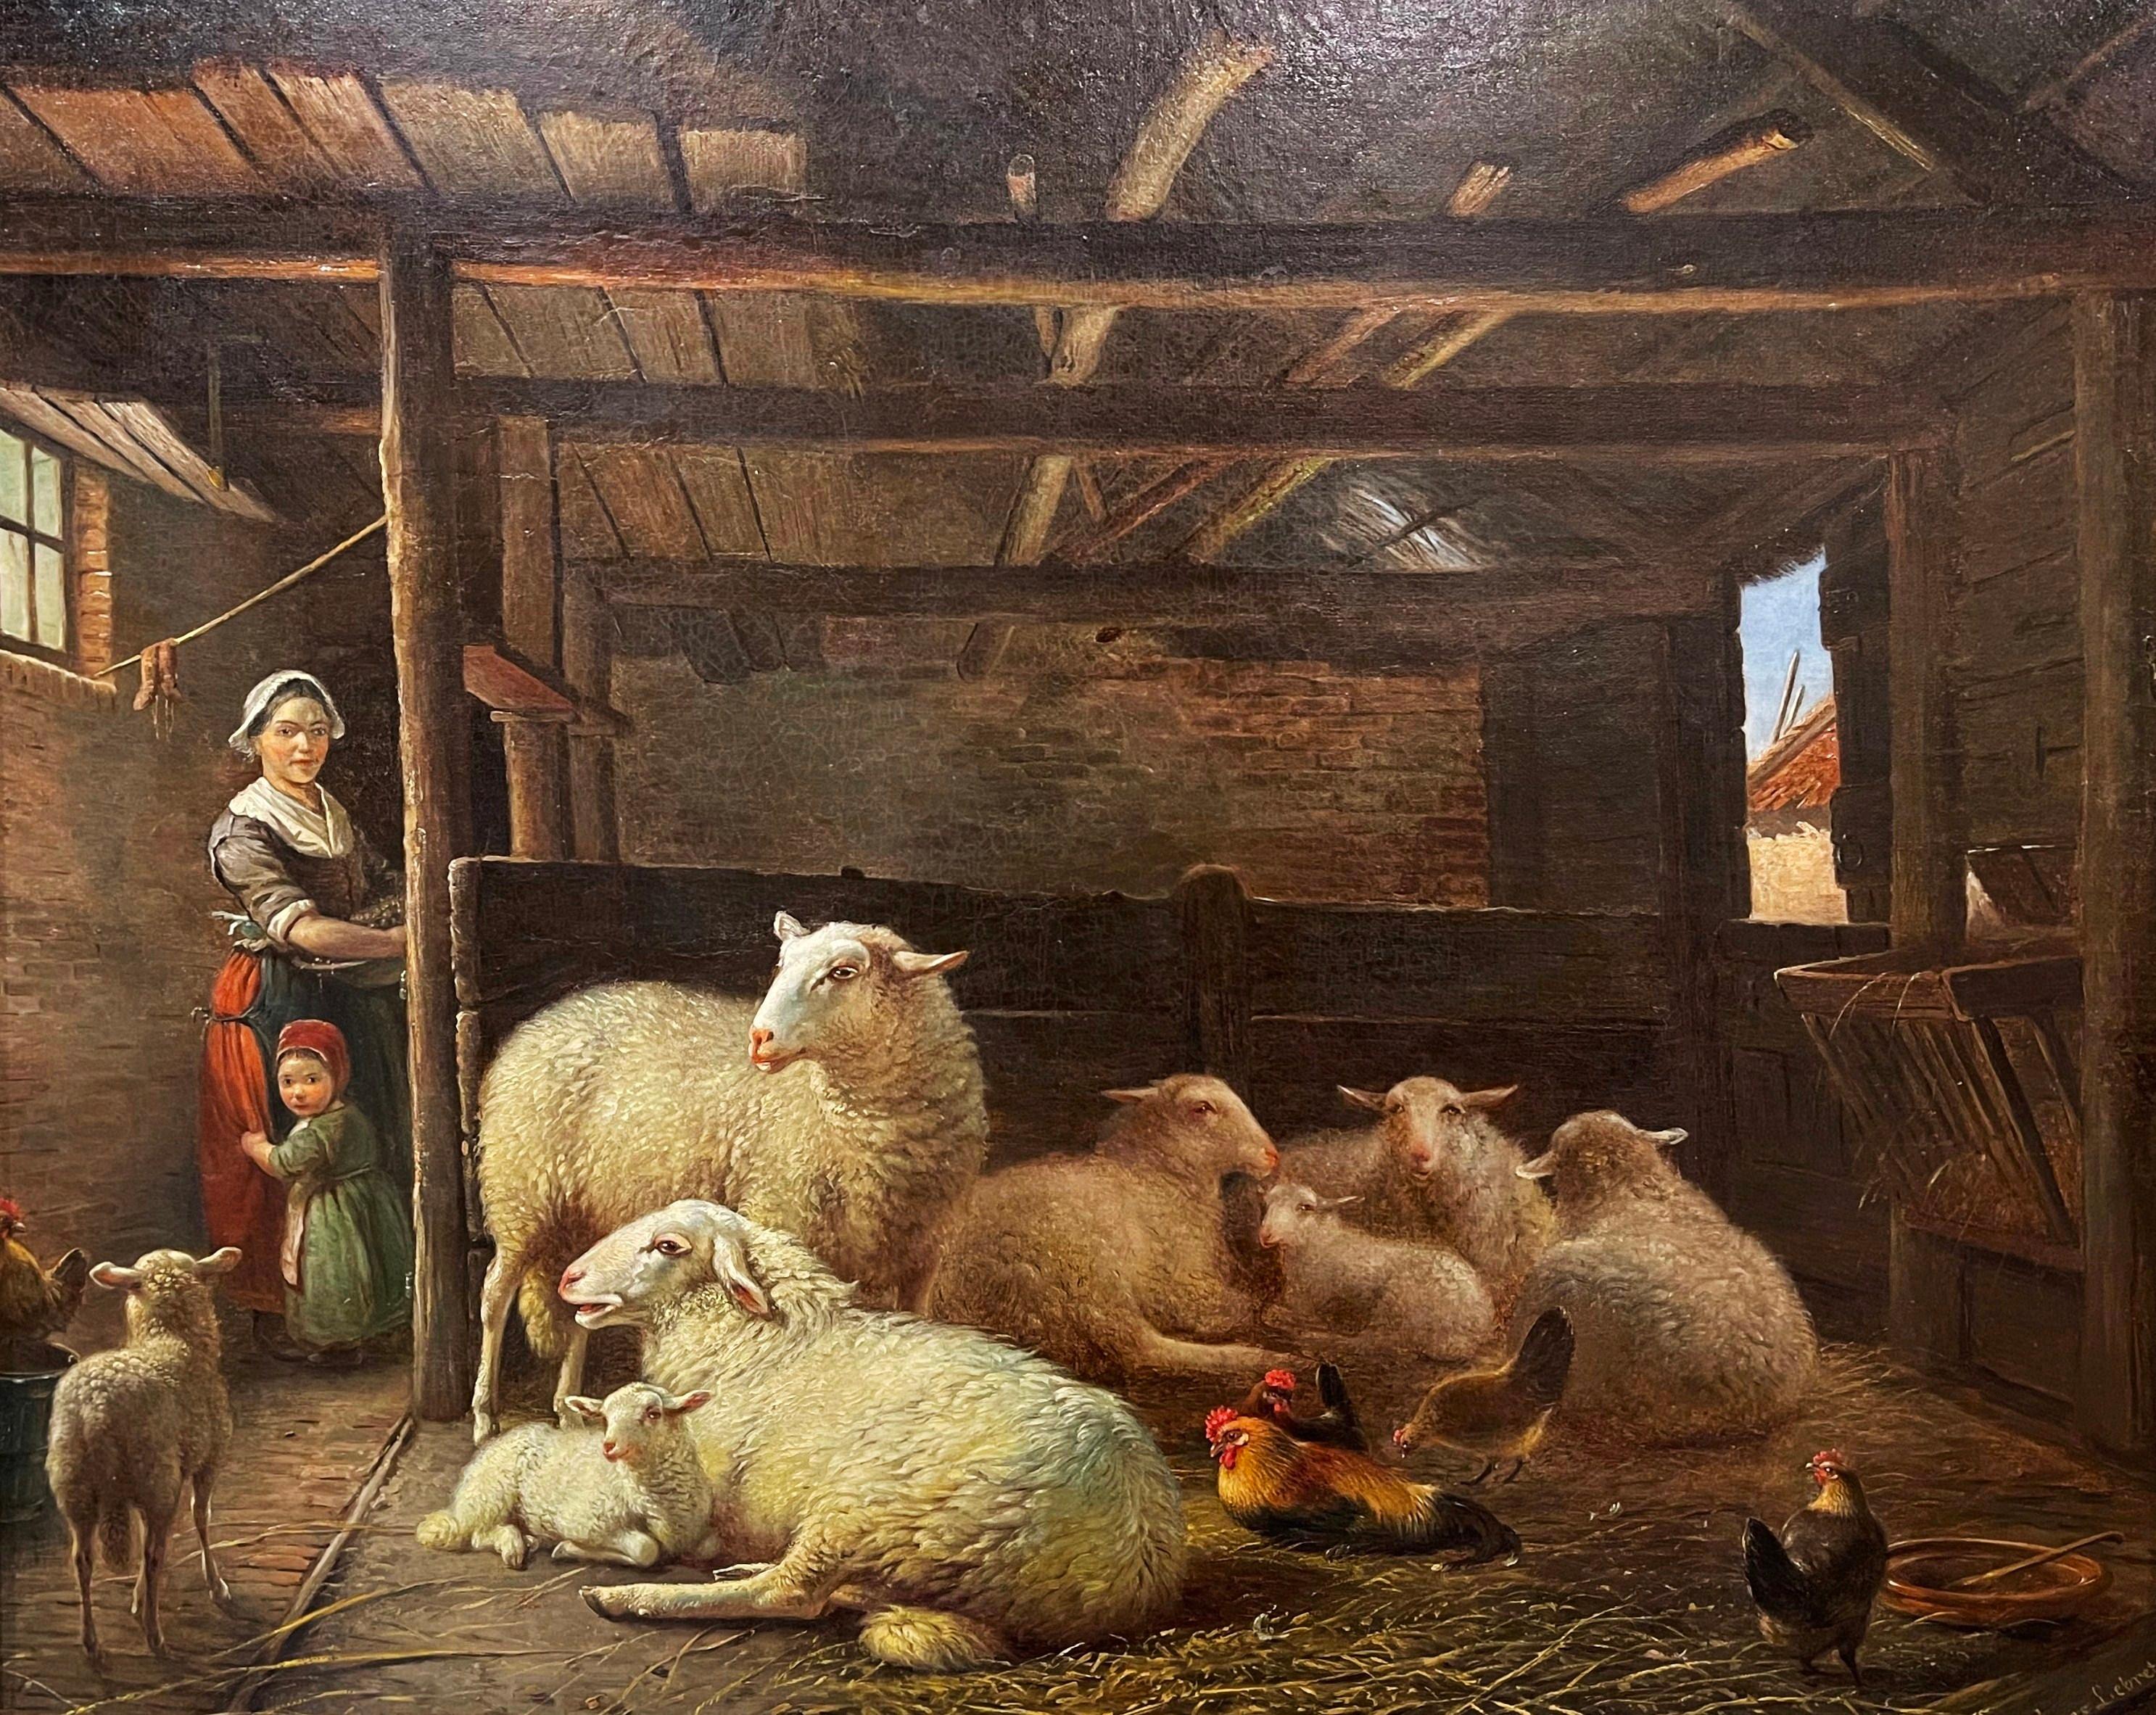 Placée dans son cadre original en bois sculpté et doré, cette huile sur toile ancienne a été réalisée en Europe vers 1860. L'art pastoral représente des moutons dans une étable, avec un chien et un berger qui les observent en arrière-plan. Le